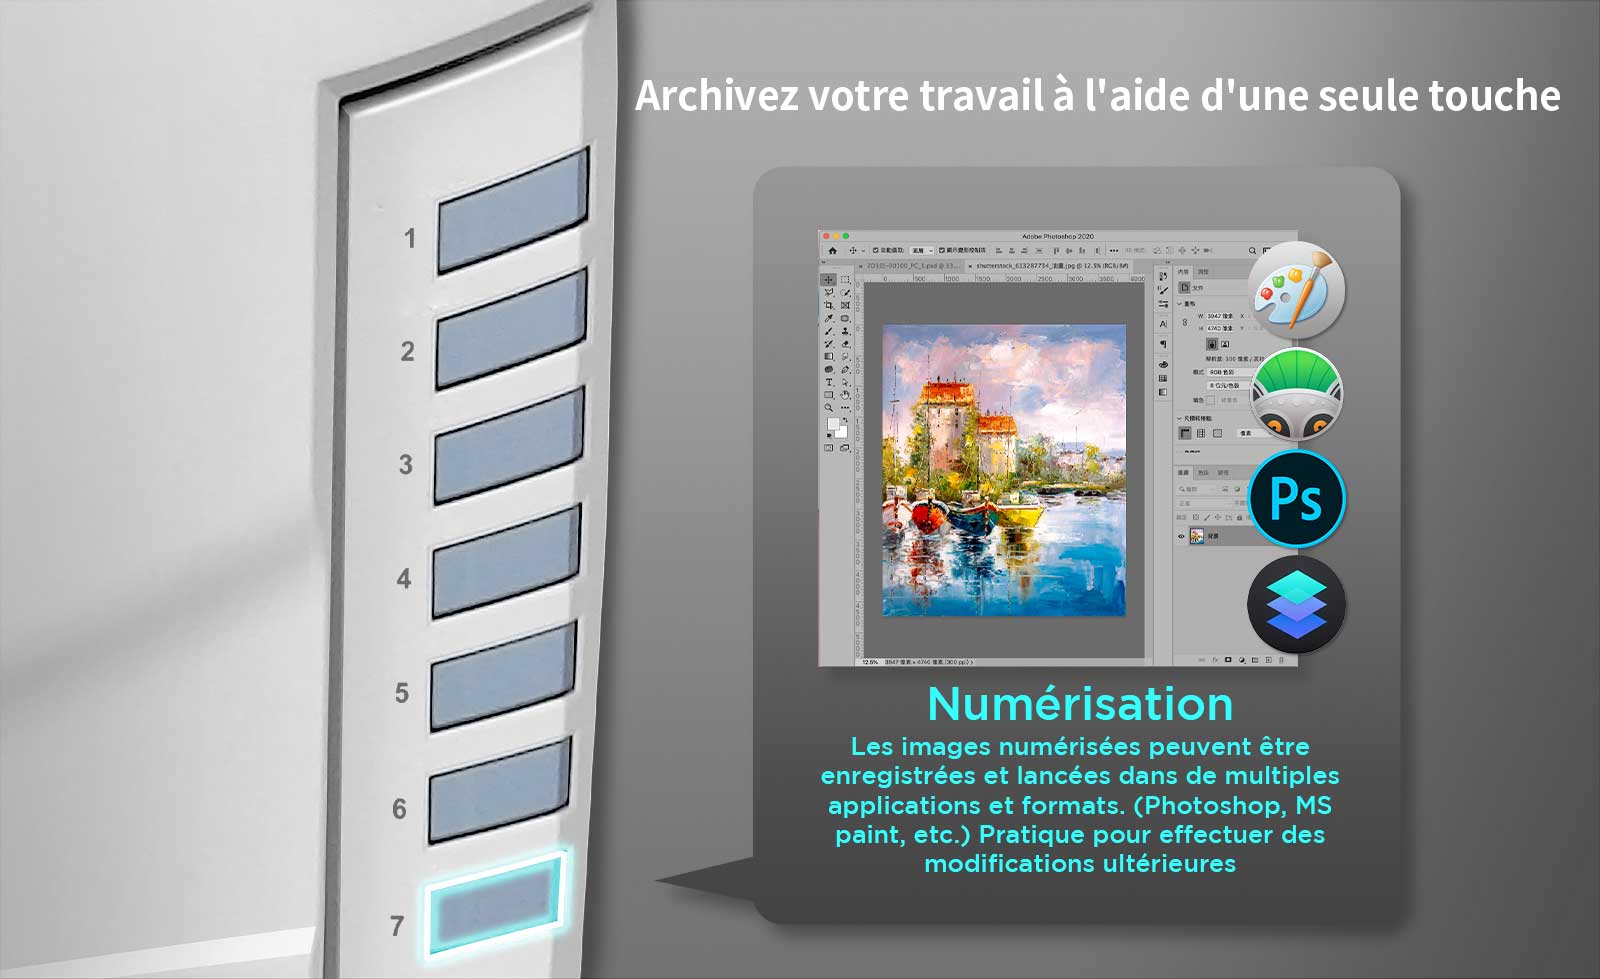 Bouton de numérisation : Numérisez et envoyez votre image vers le logiciel d'édition sélectionné, tel Print ou Photoshop.